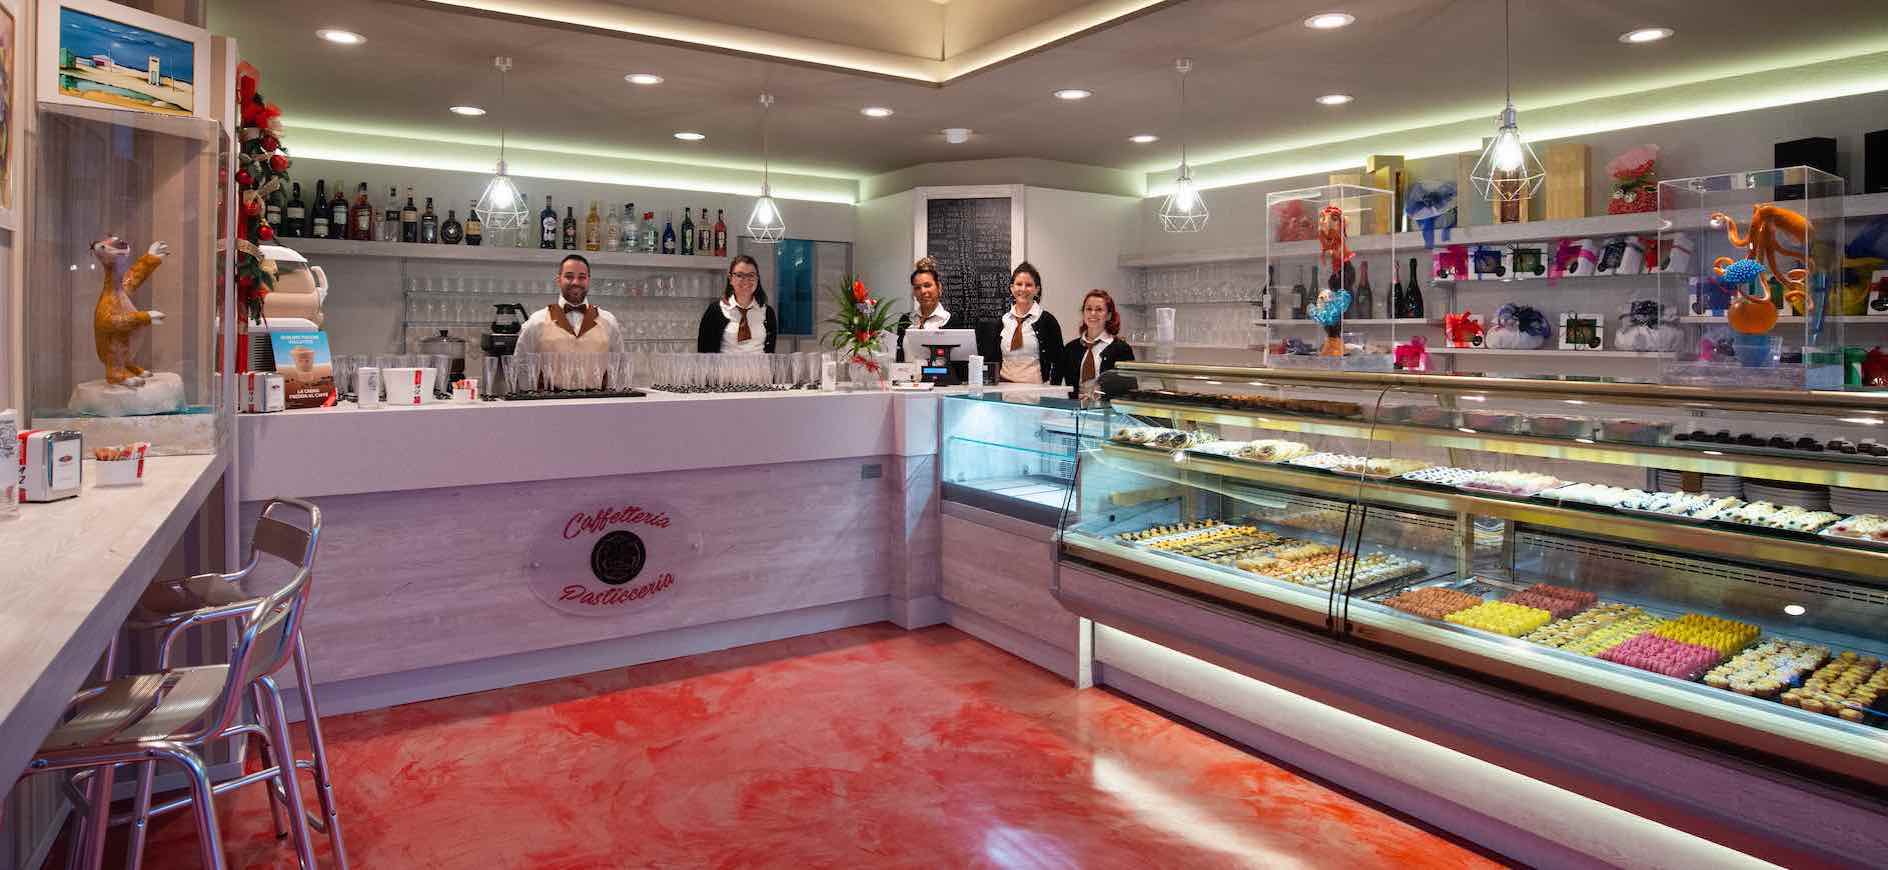 pirani-bakery-cafe